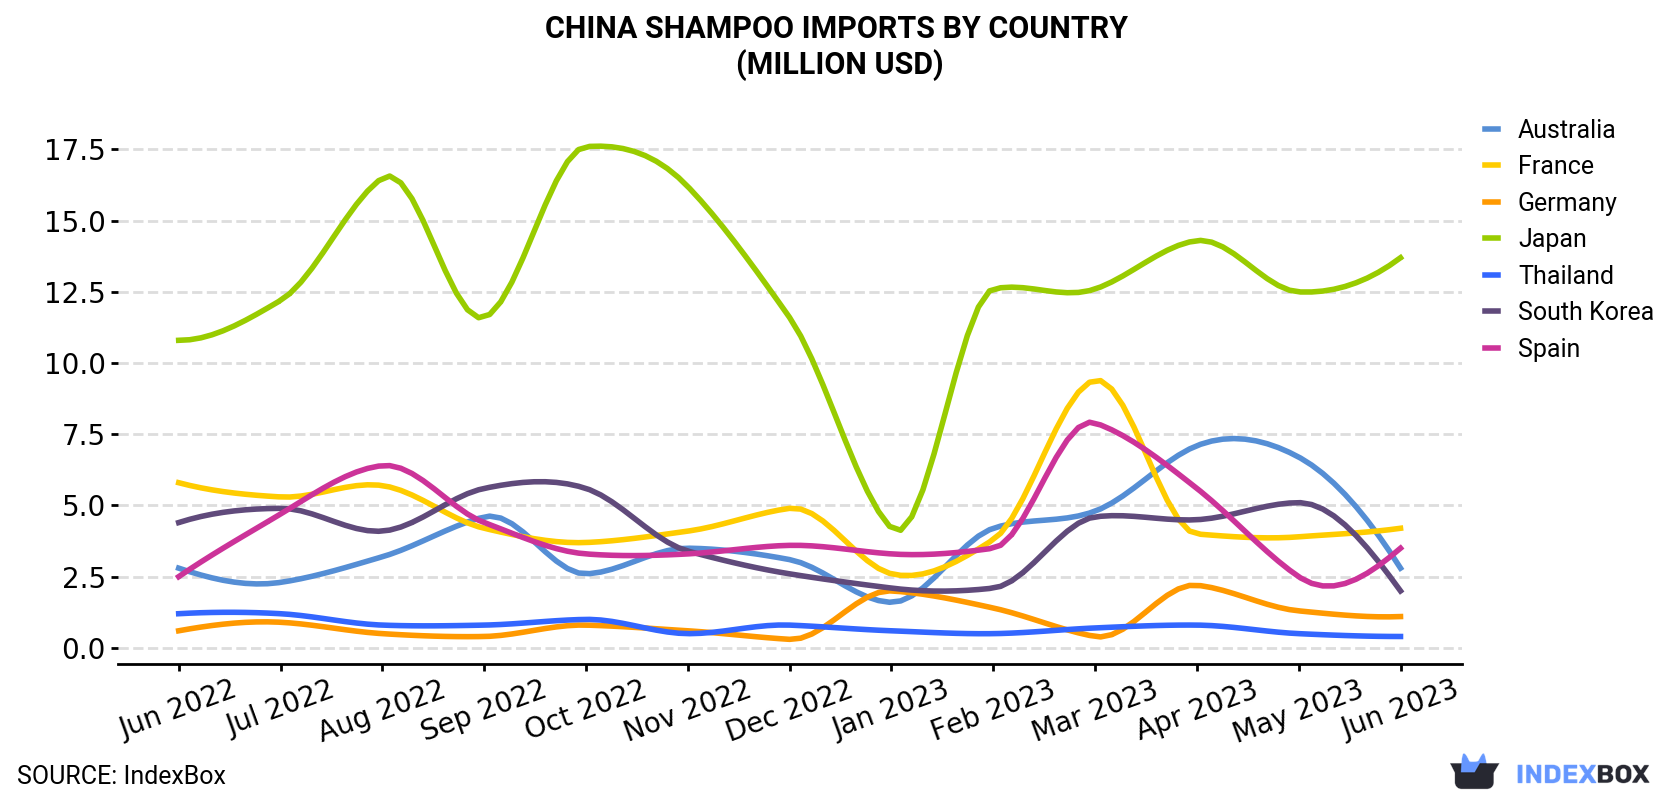 China Shampoo Imports By Country (Million USD)